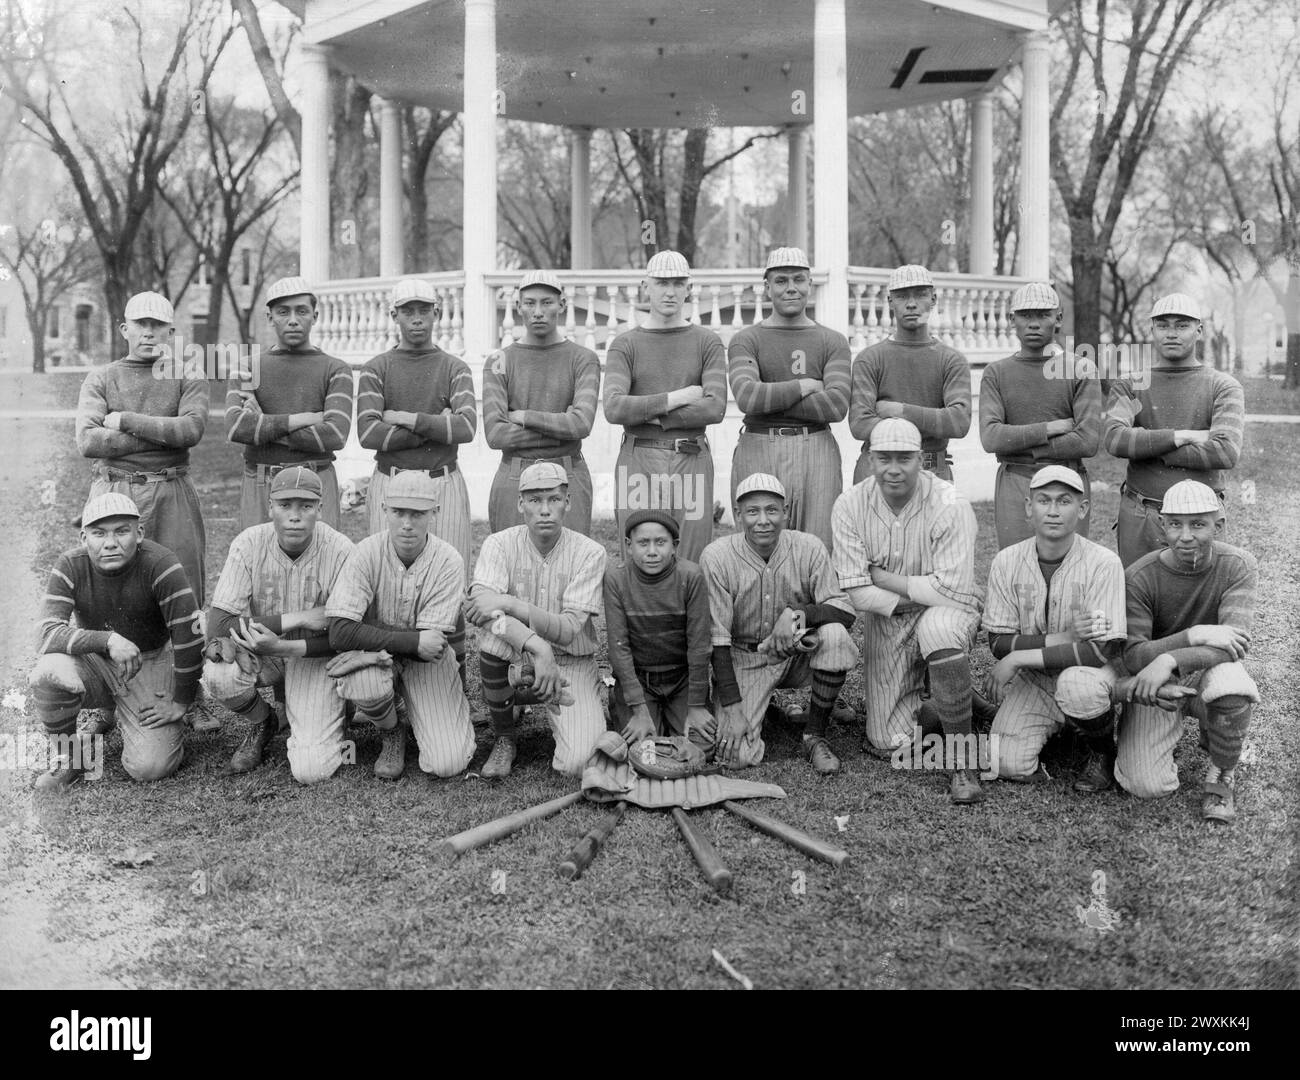 Photo de groupe d'une équipe de baseball, peut-être de l'Institut Haskell au Kansas (1912-1917) Banque D'Images